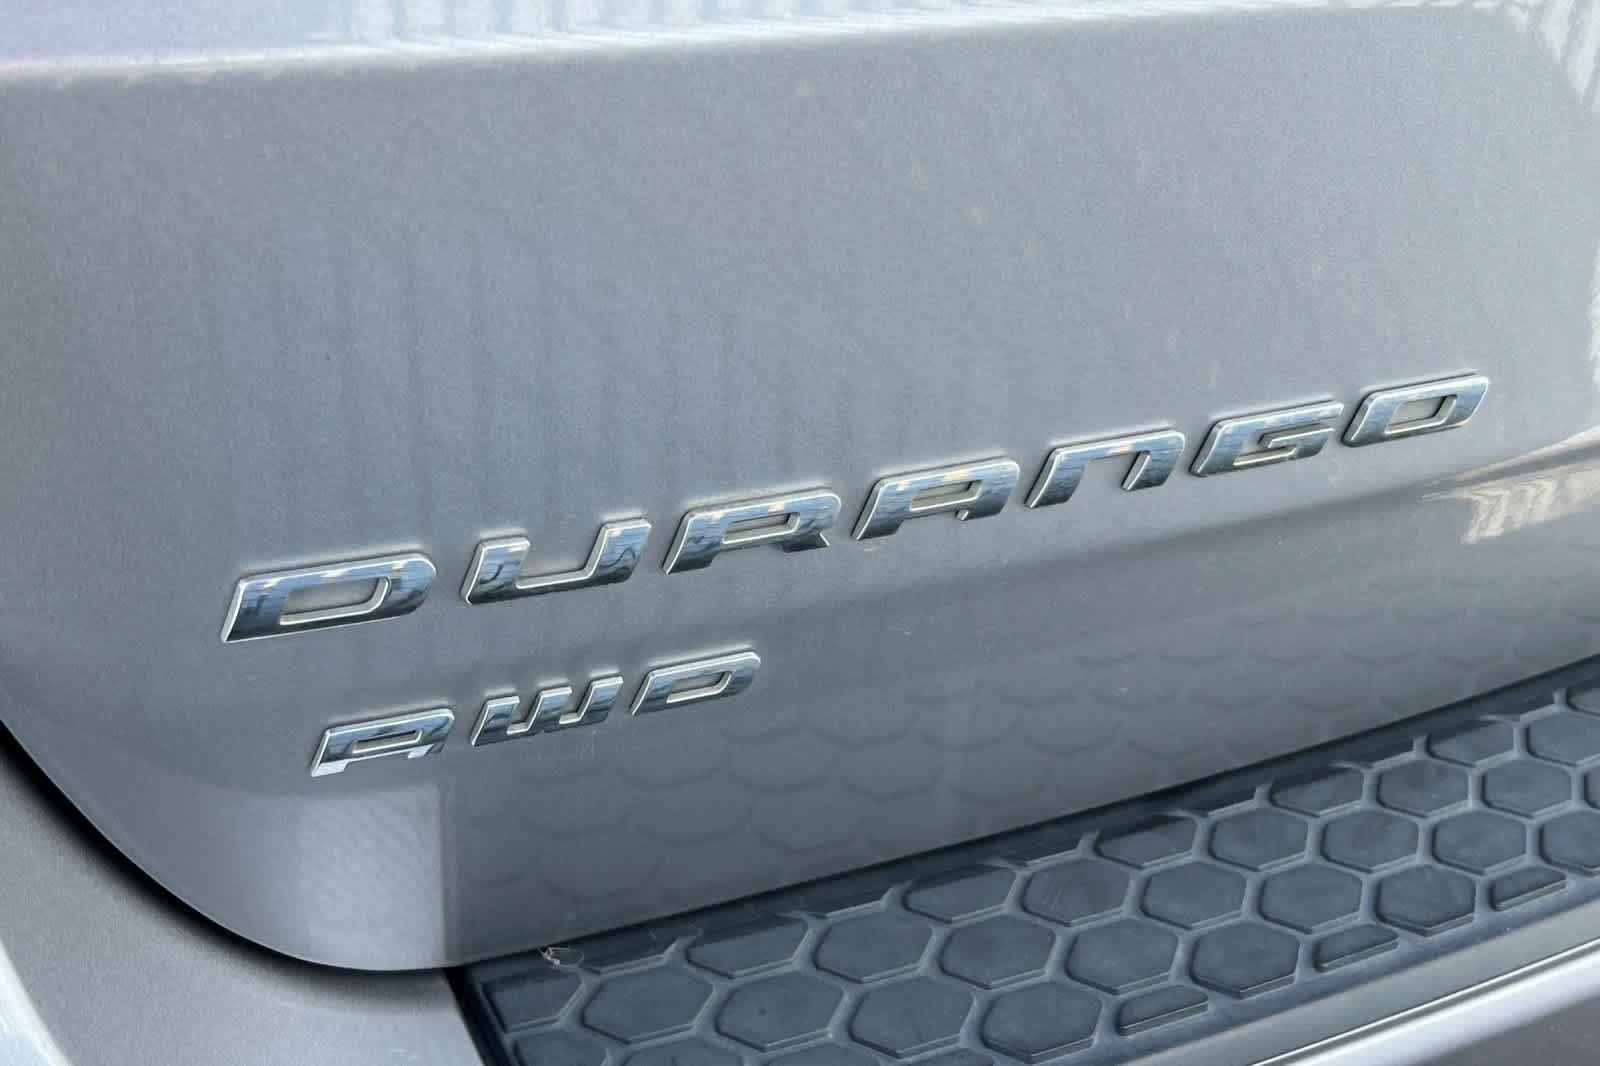 2015 Dodge Durango R/T